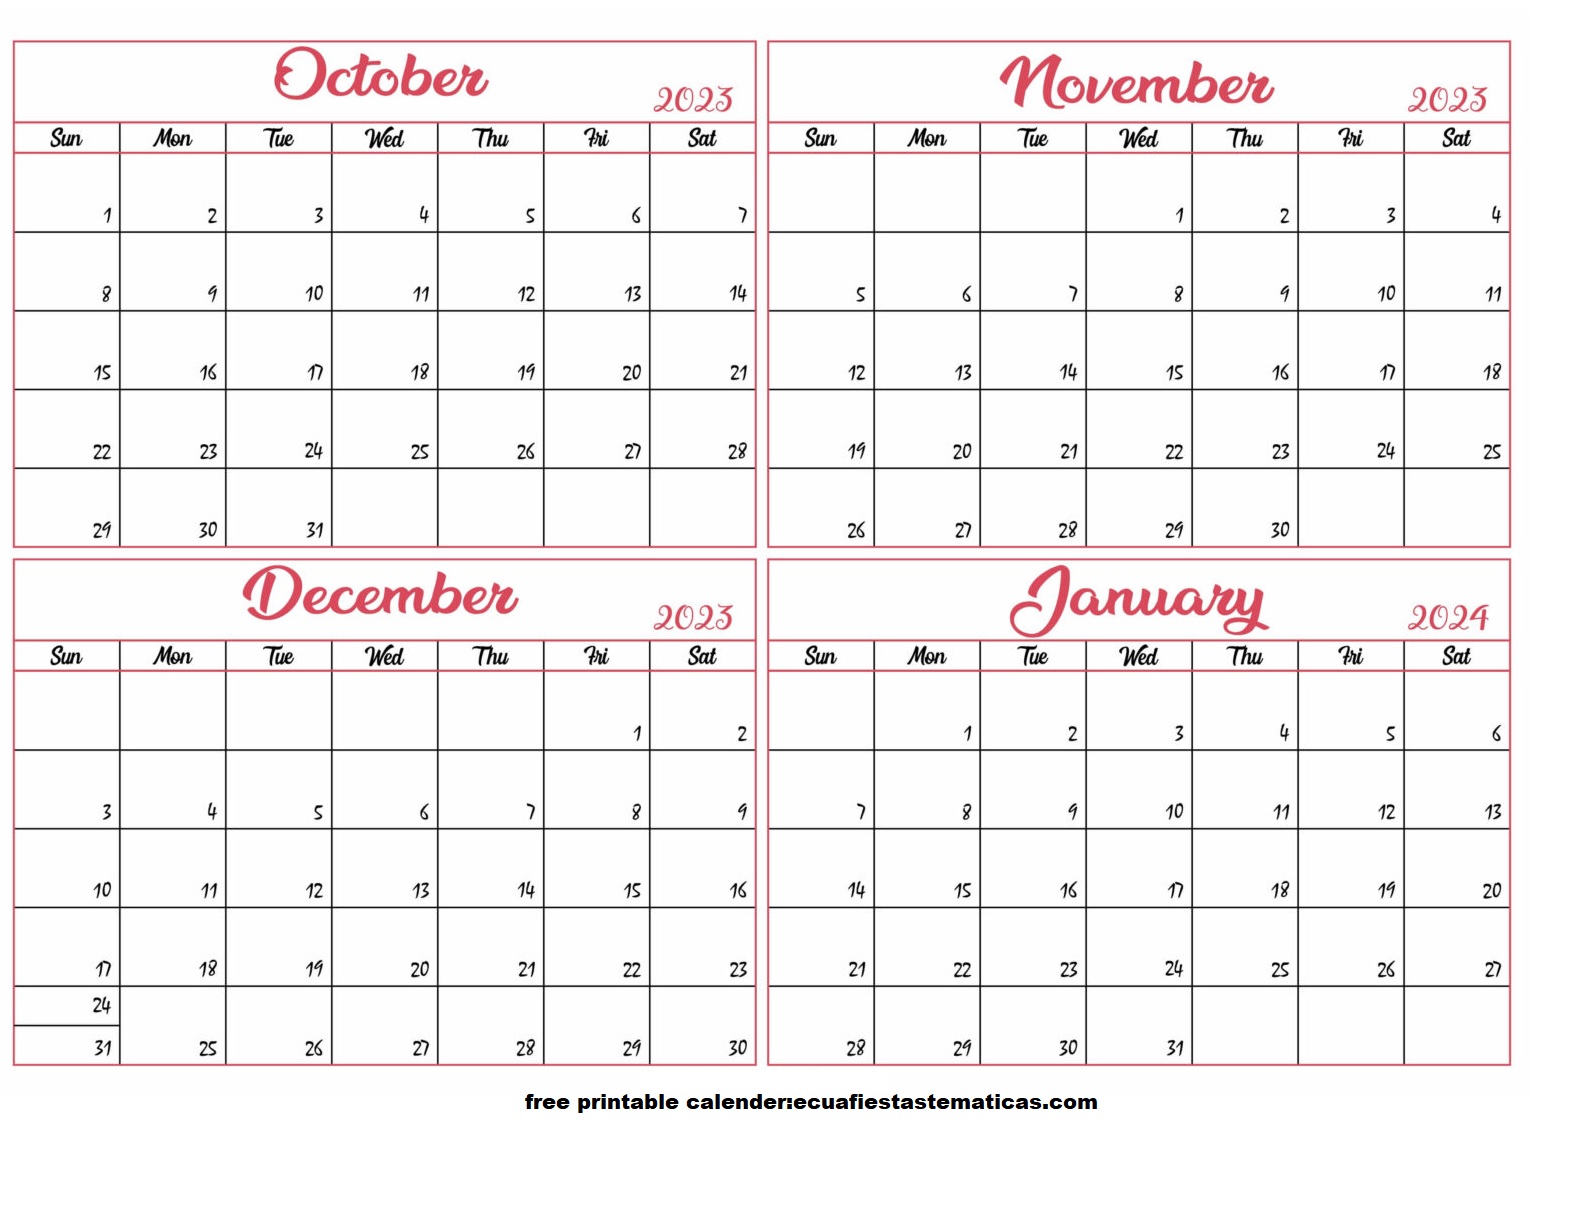 October 2023 to January 2024 Calendar Template